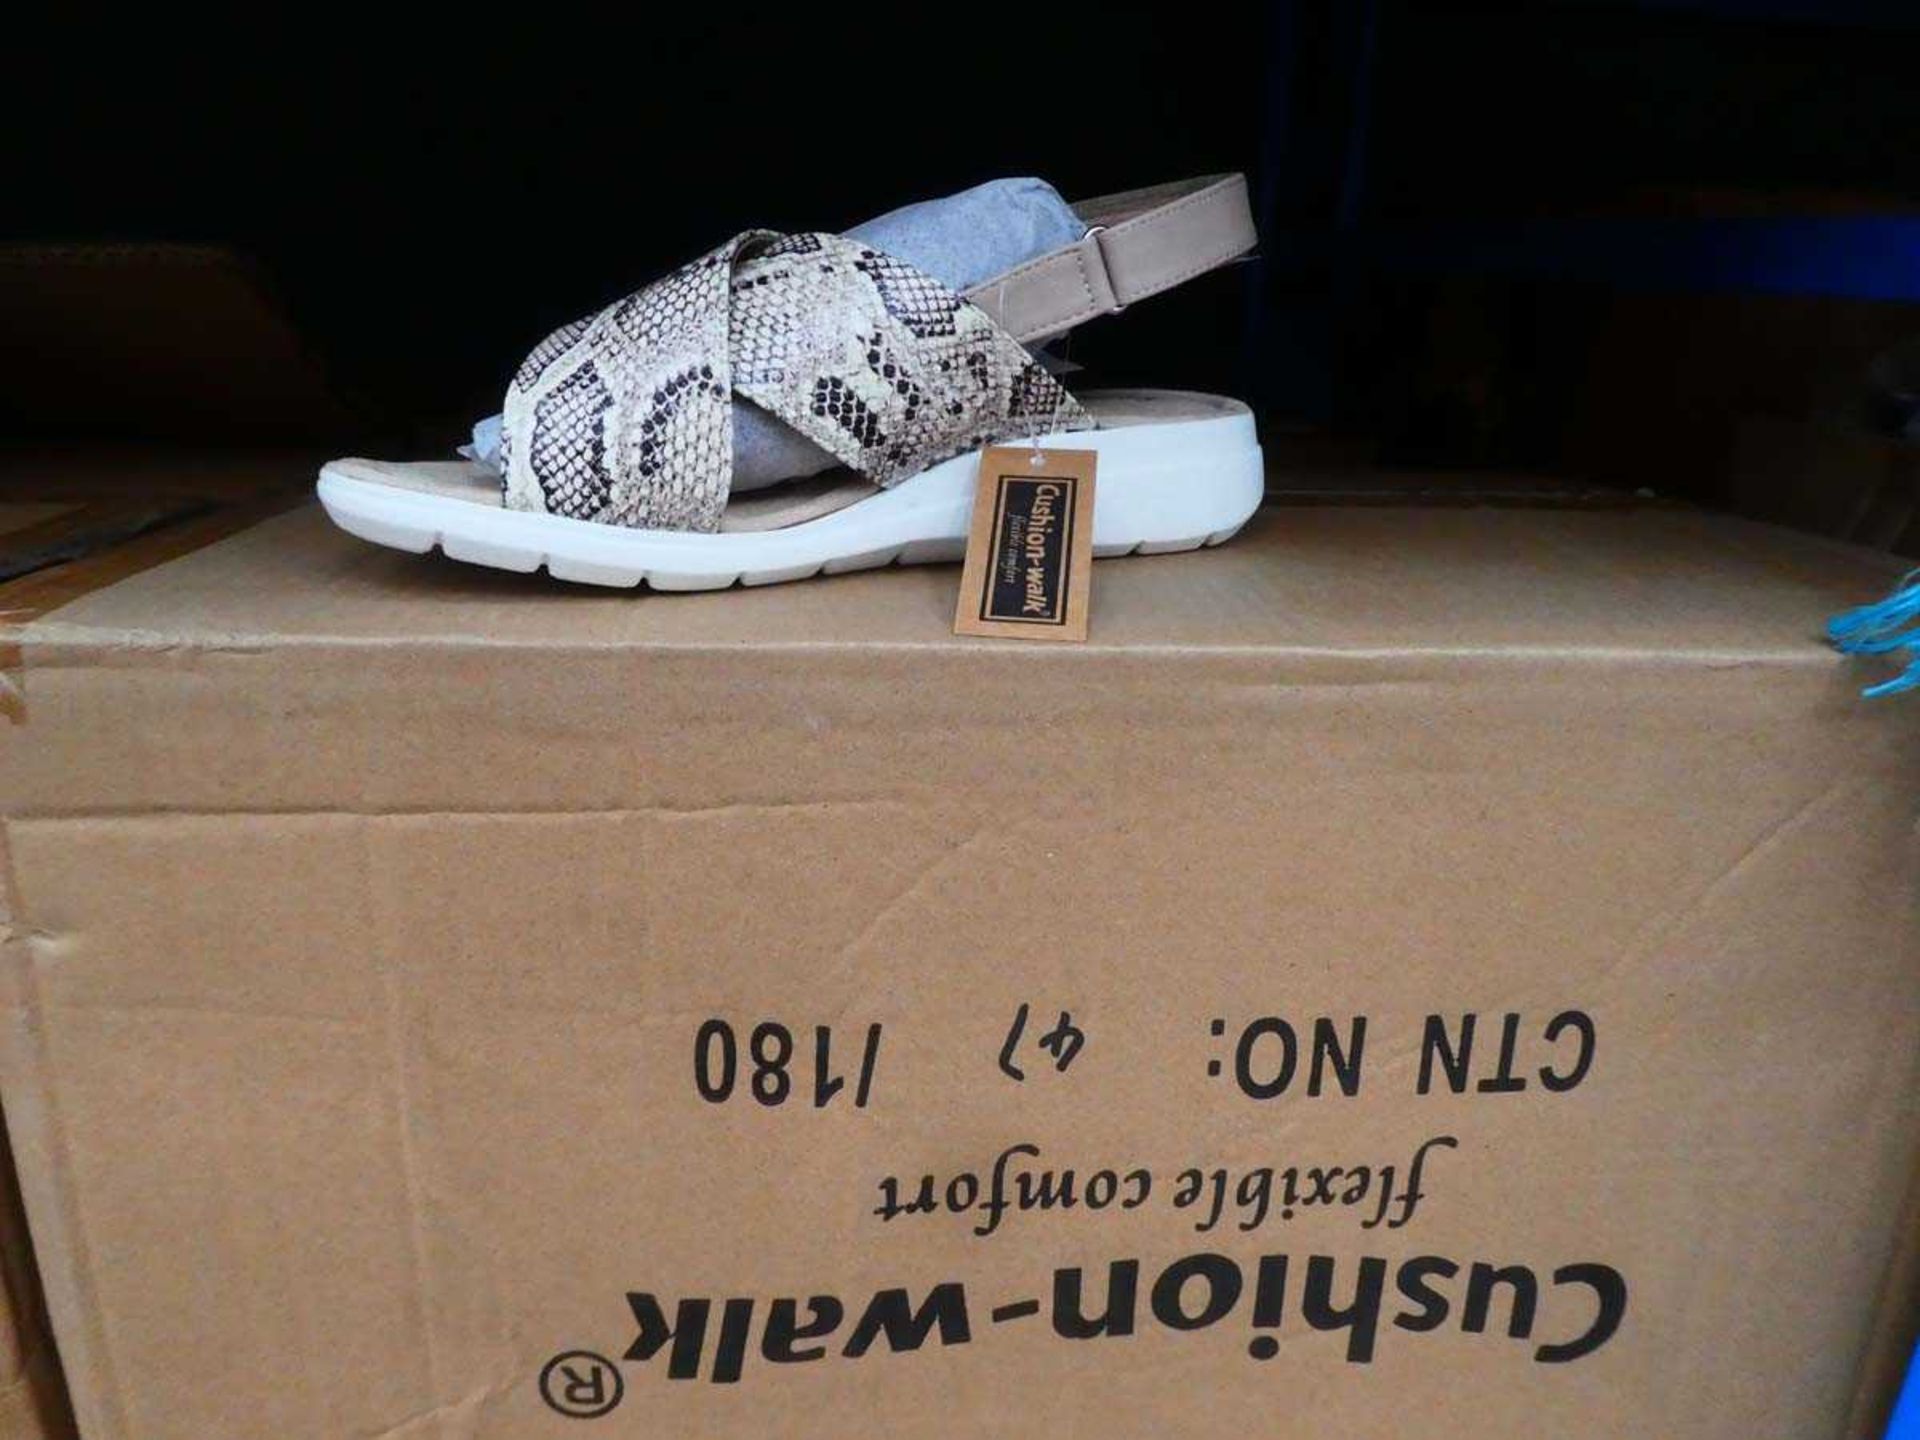 +VAT Qty of Cushion-Walk shoes